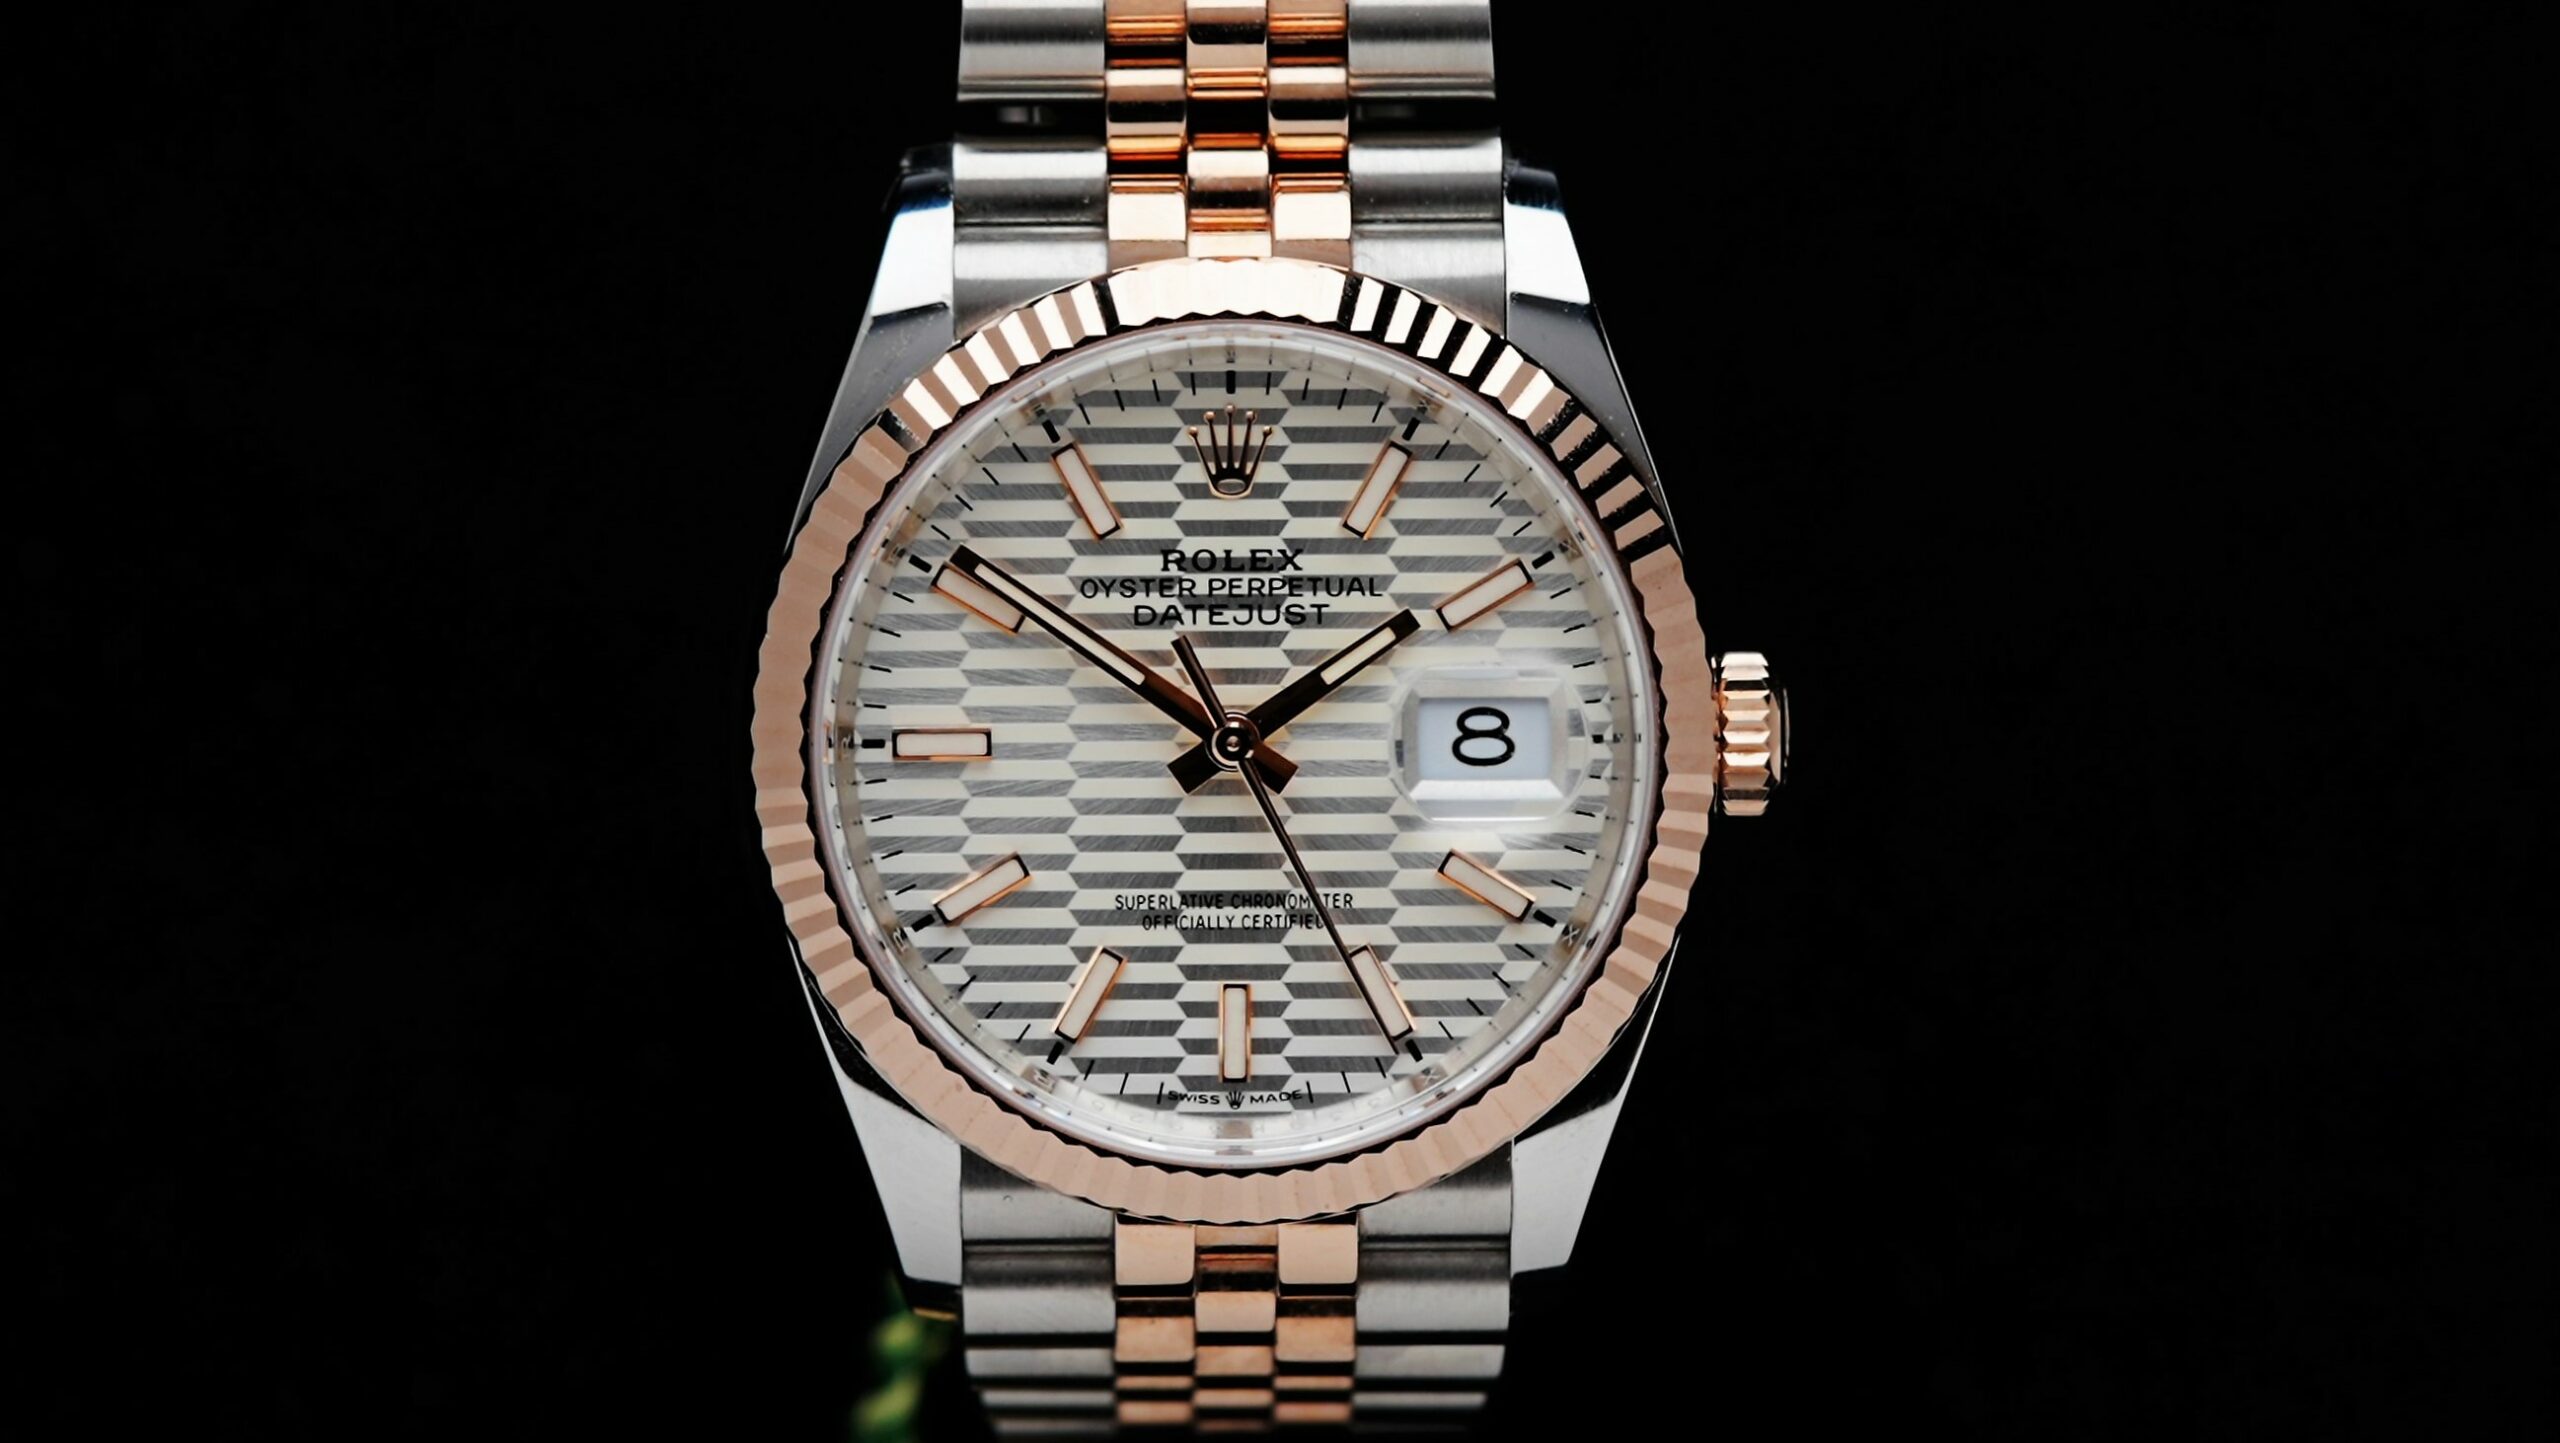 Rolex Datejust 36 Motif Rose Gold 2022 watch featured under white lighting.